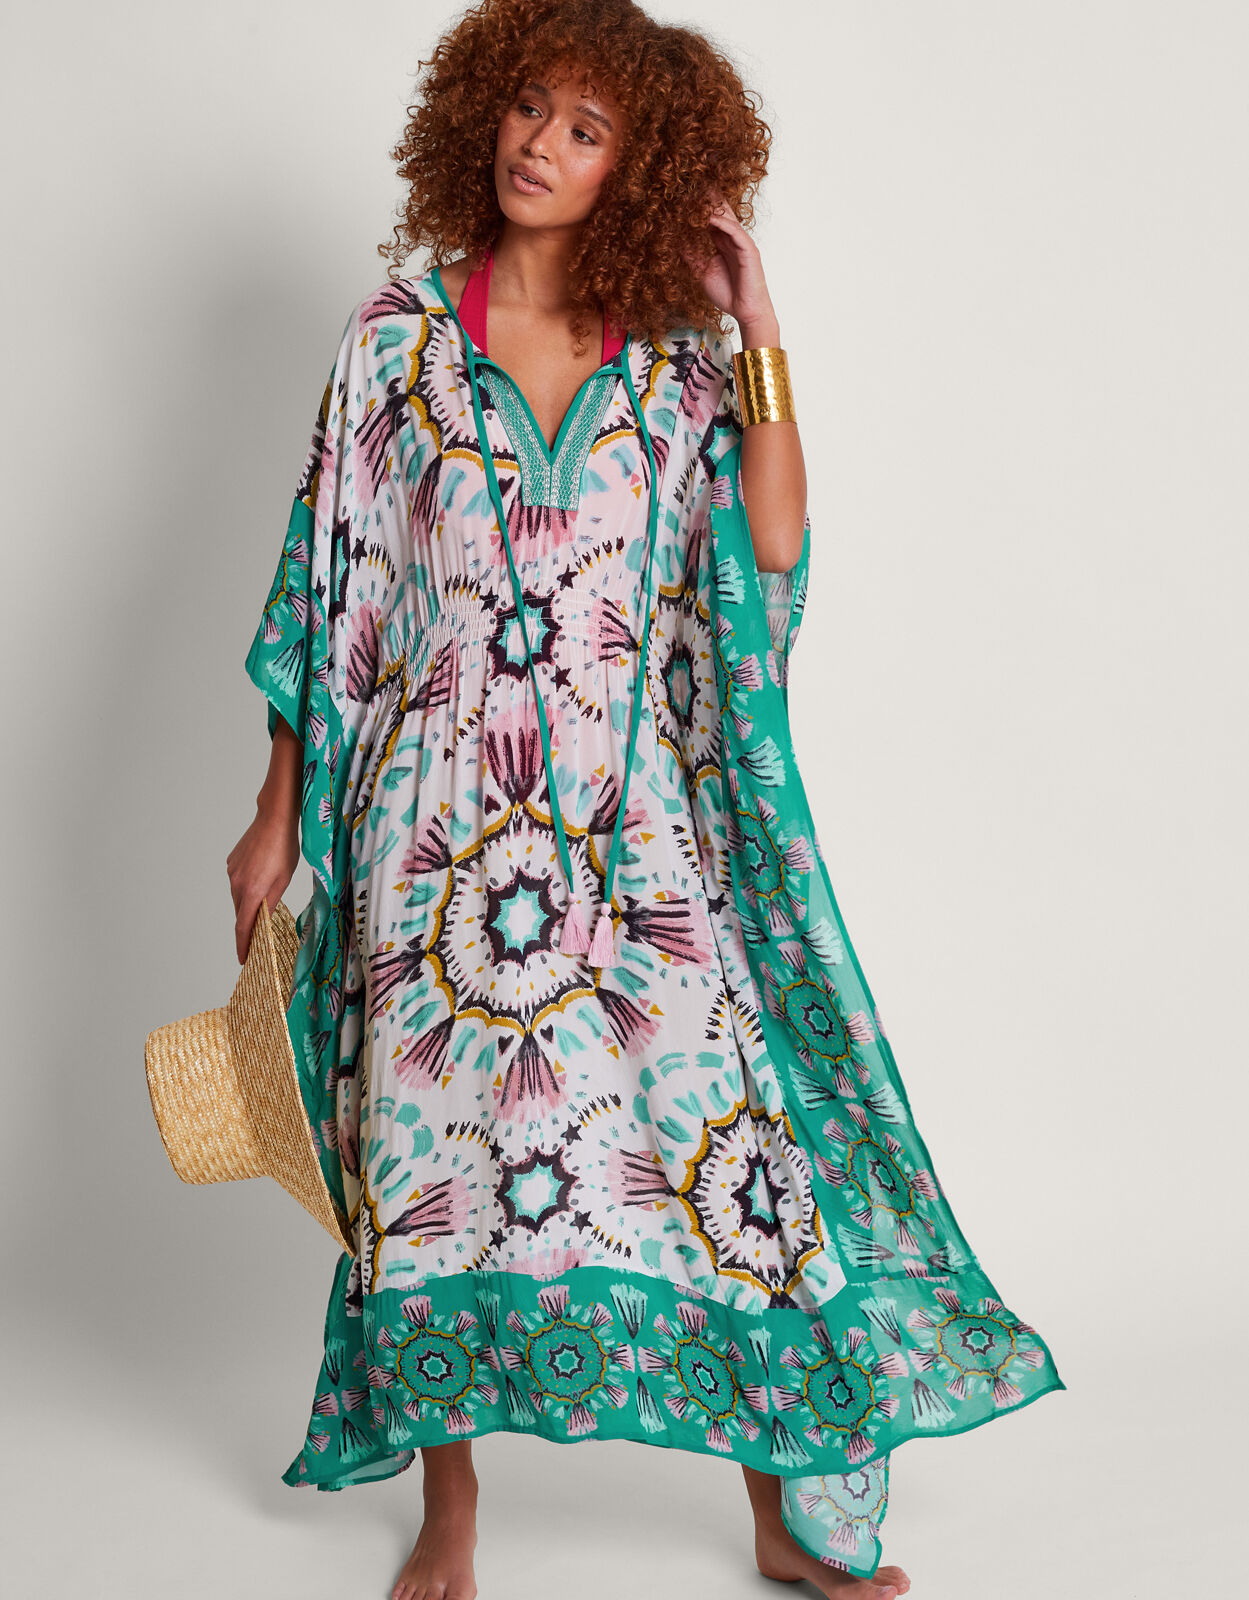 Discover more than 108 beach kaftan dress